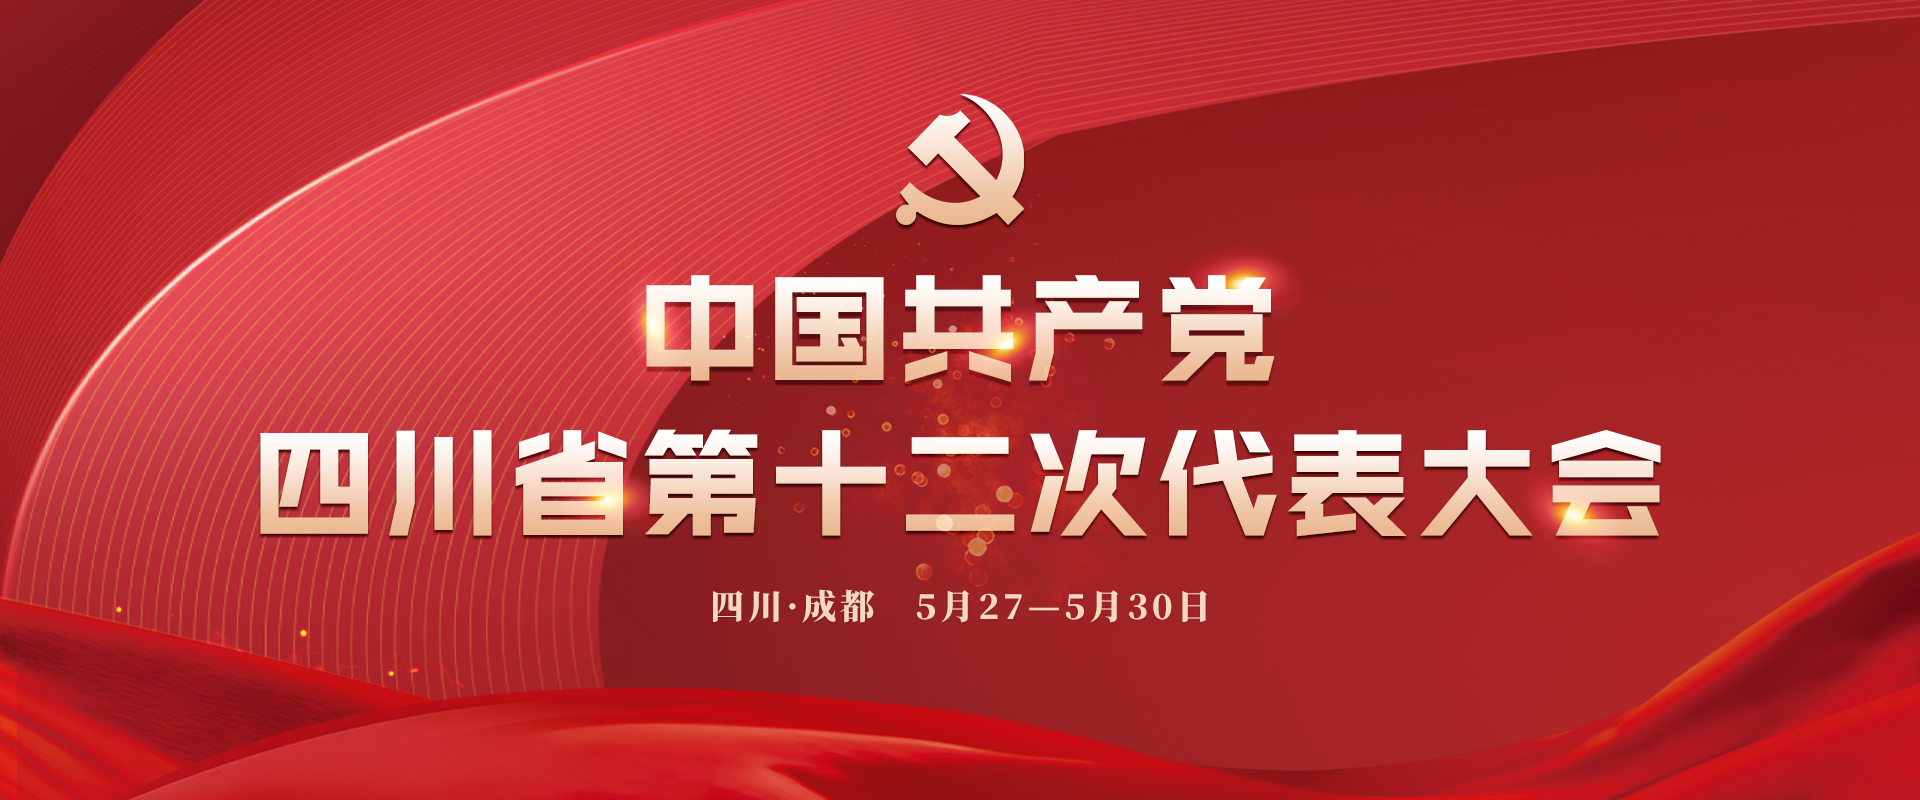 中国共产党四川省第十二次代表大会中国共产党四川省第十二次代表大会